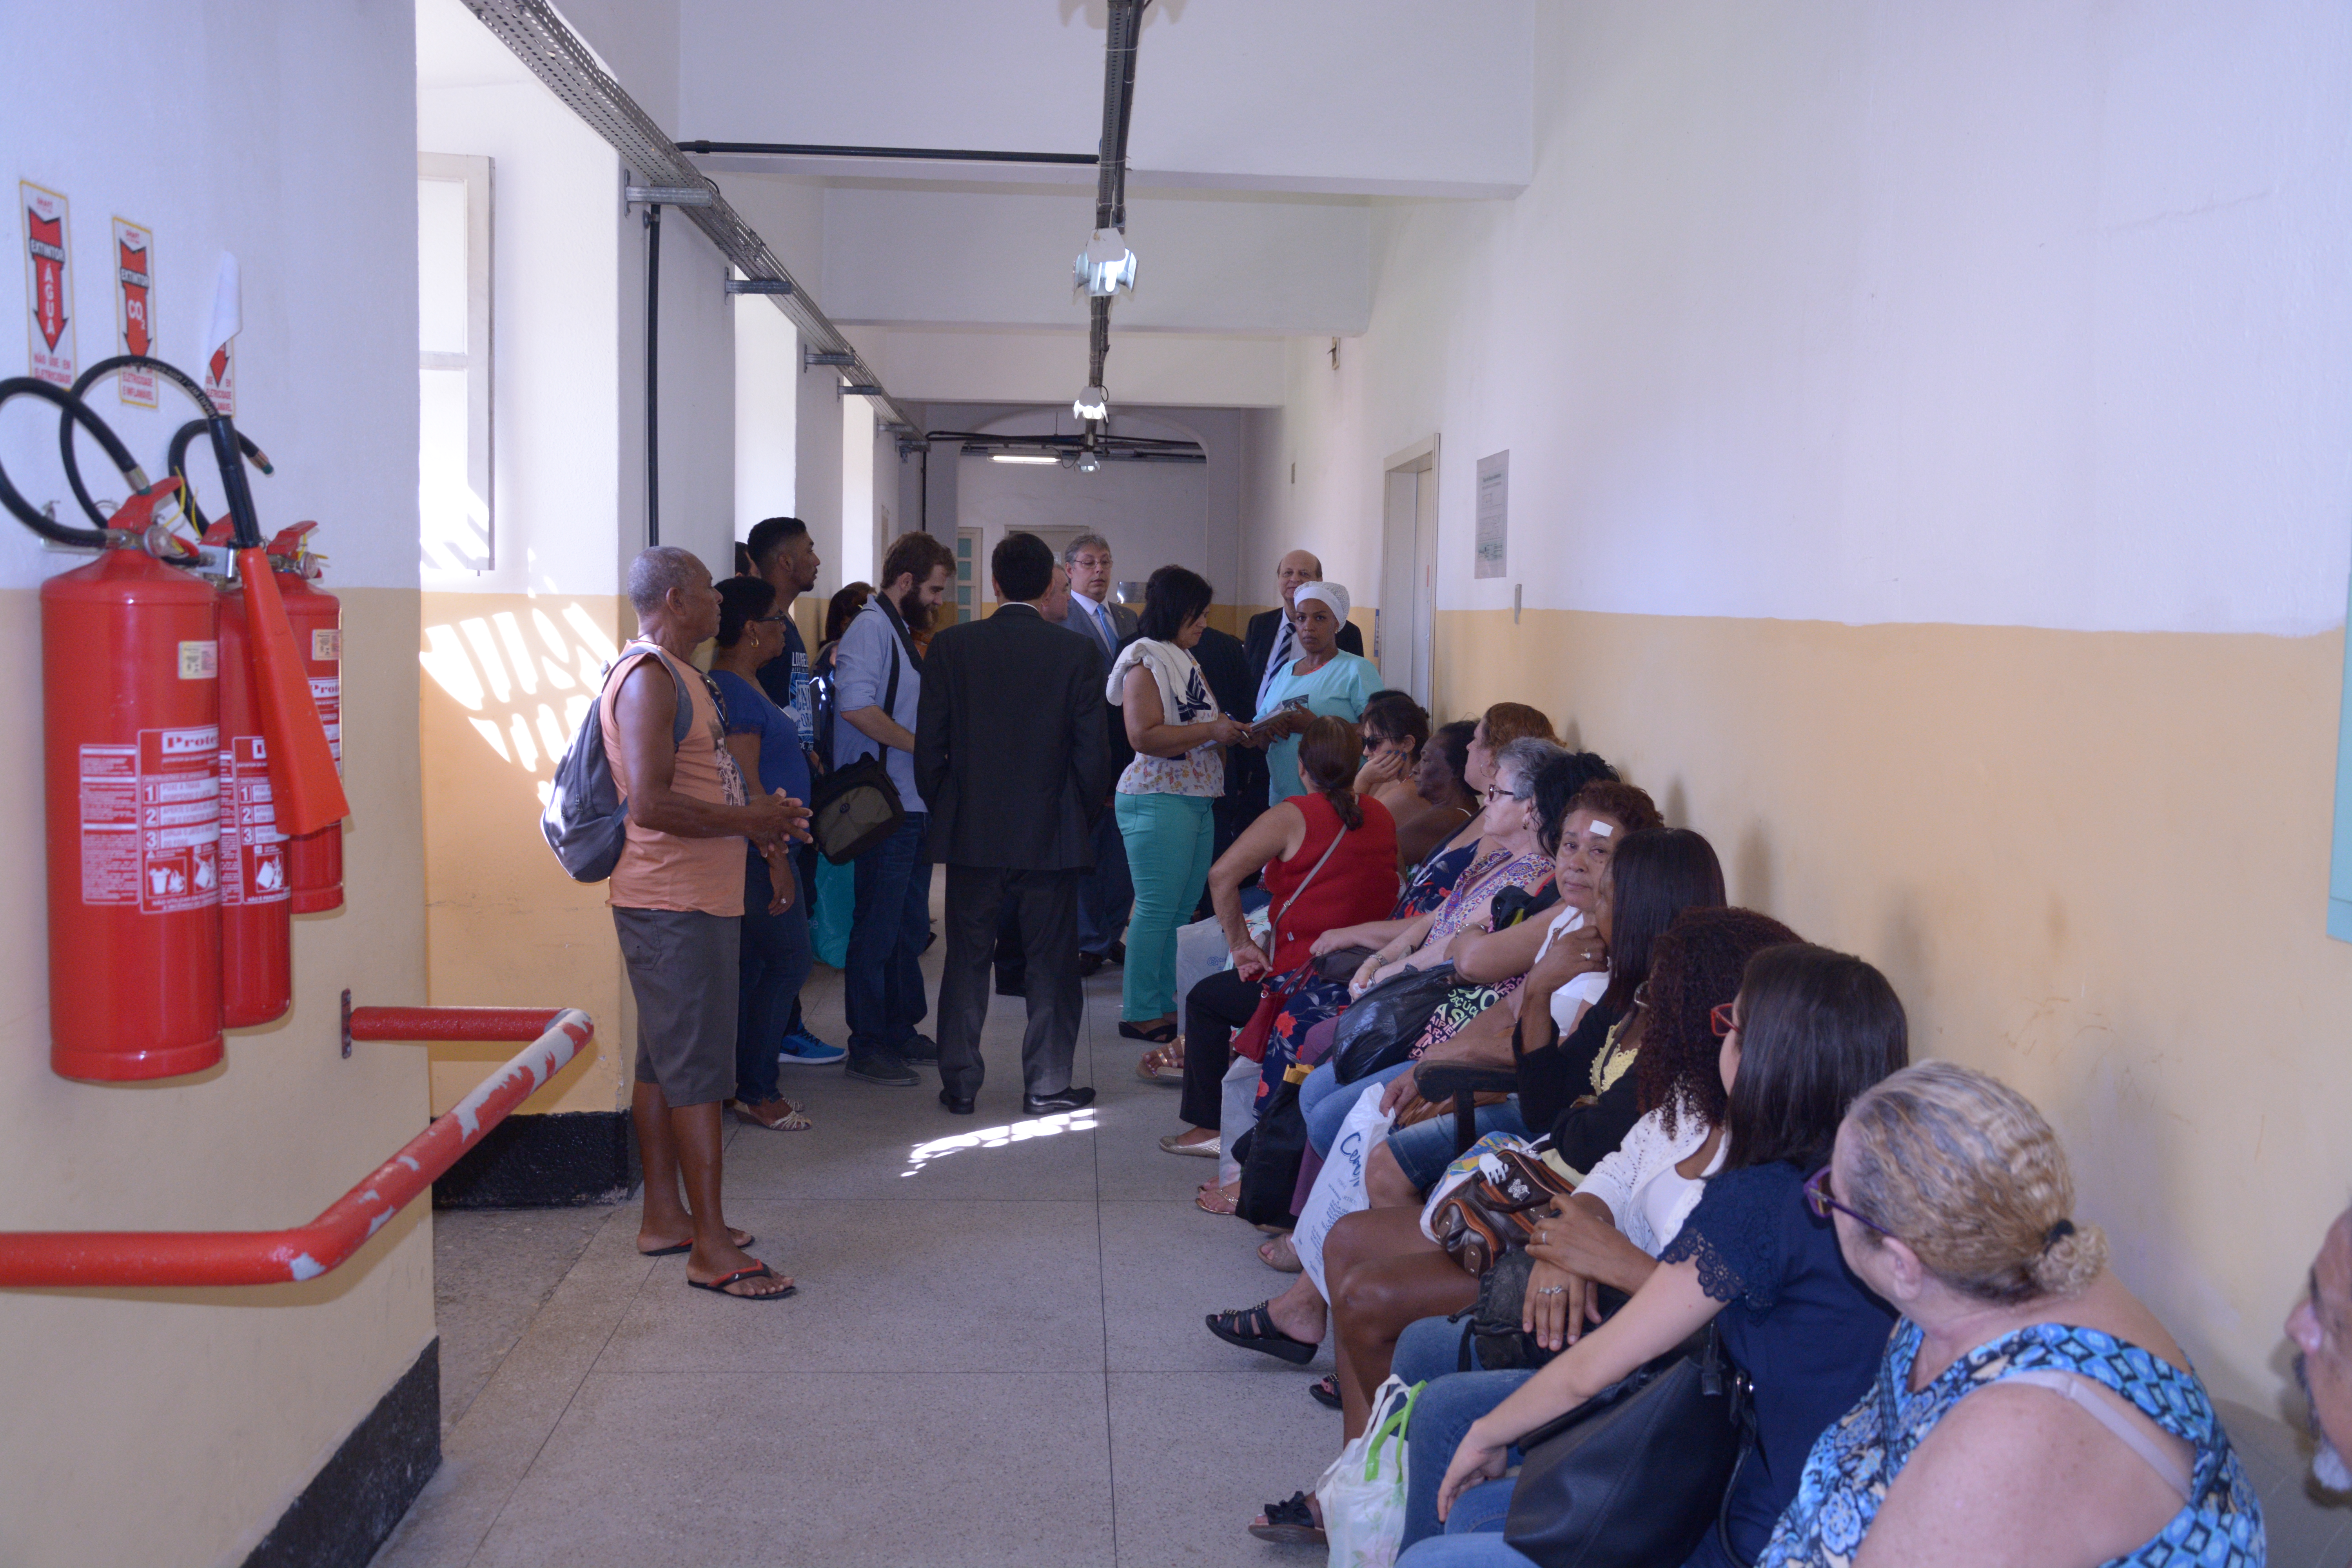 Descrição da foto: corredor com bancos encostados na parede ocupados por pessoas à espera de atendimento médico